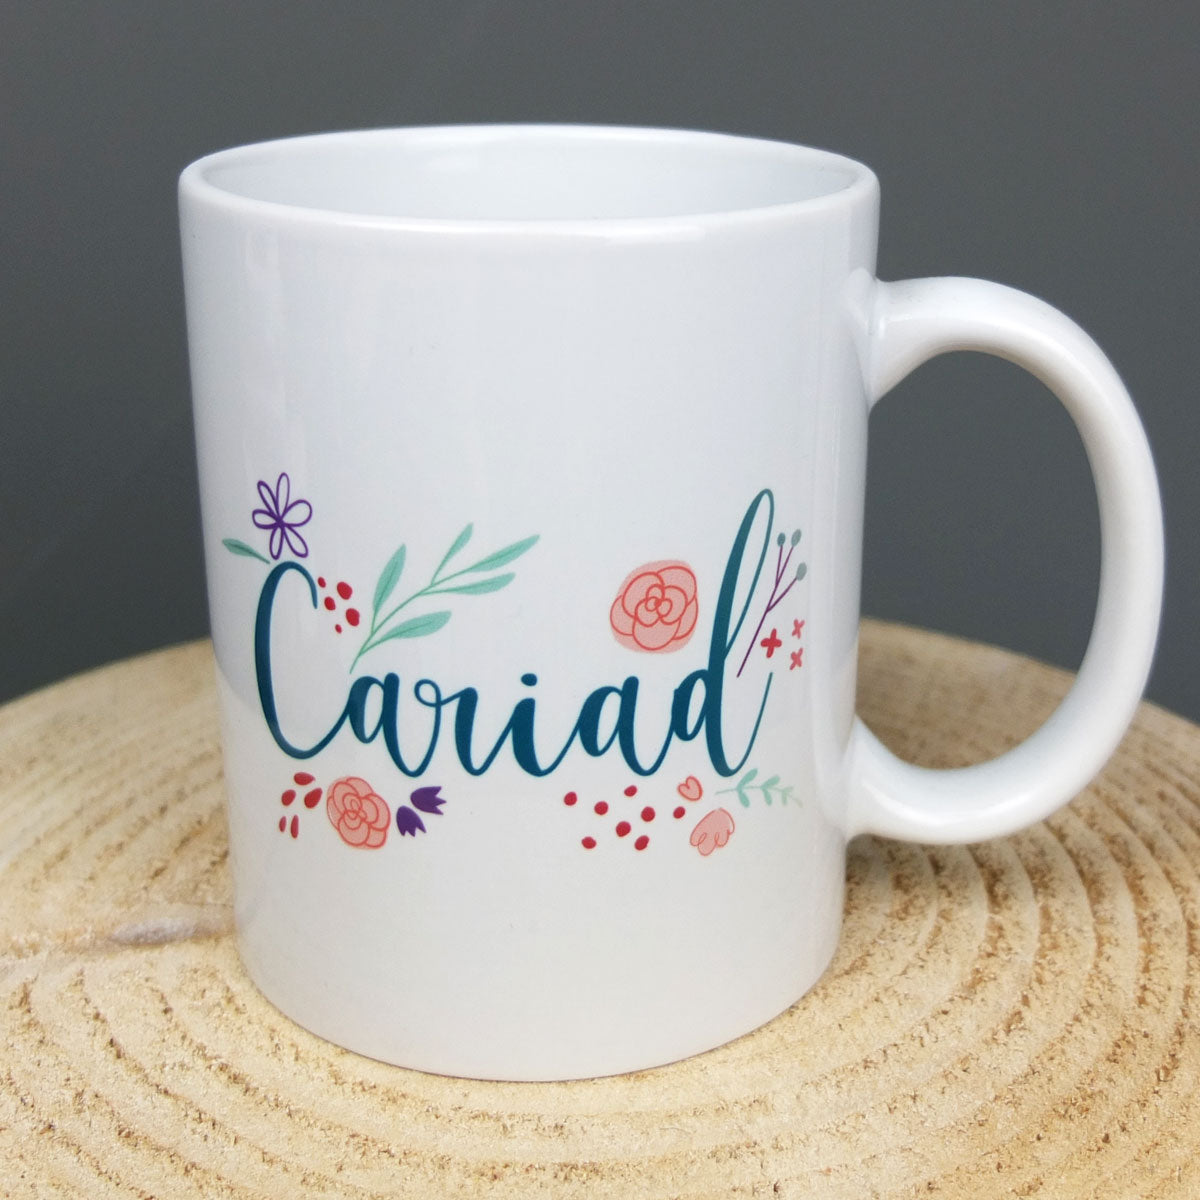 Floral Cariad Mug